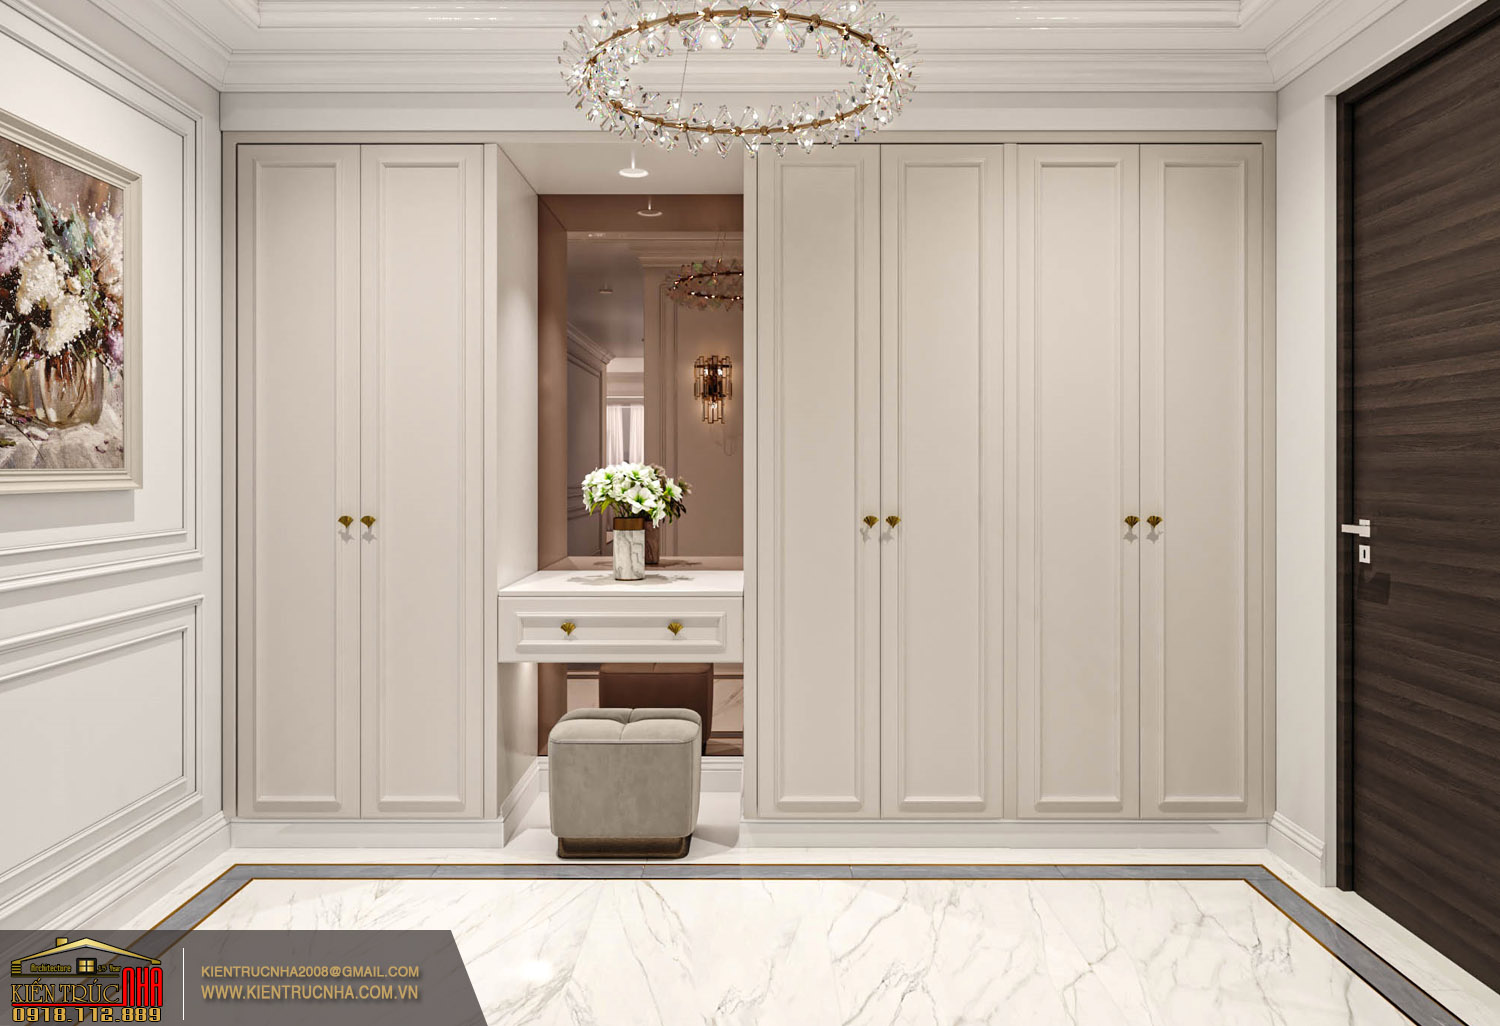 nội thất hiện đại luxury đẳng cấp mang màu trắng sang trọng | CĐT: anh Lộc Vũng Tàu